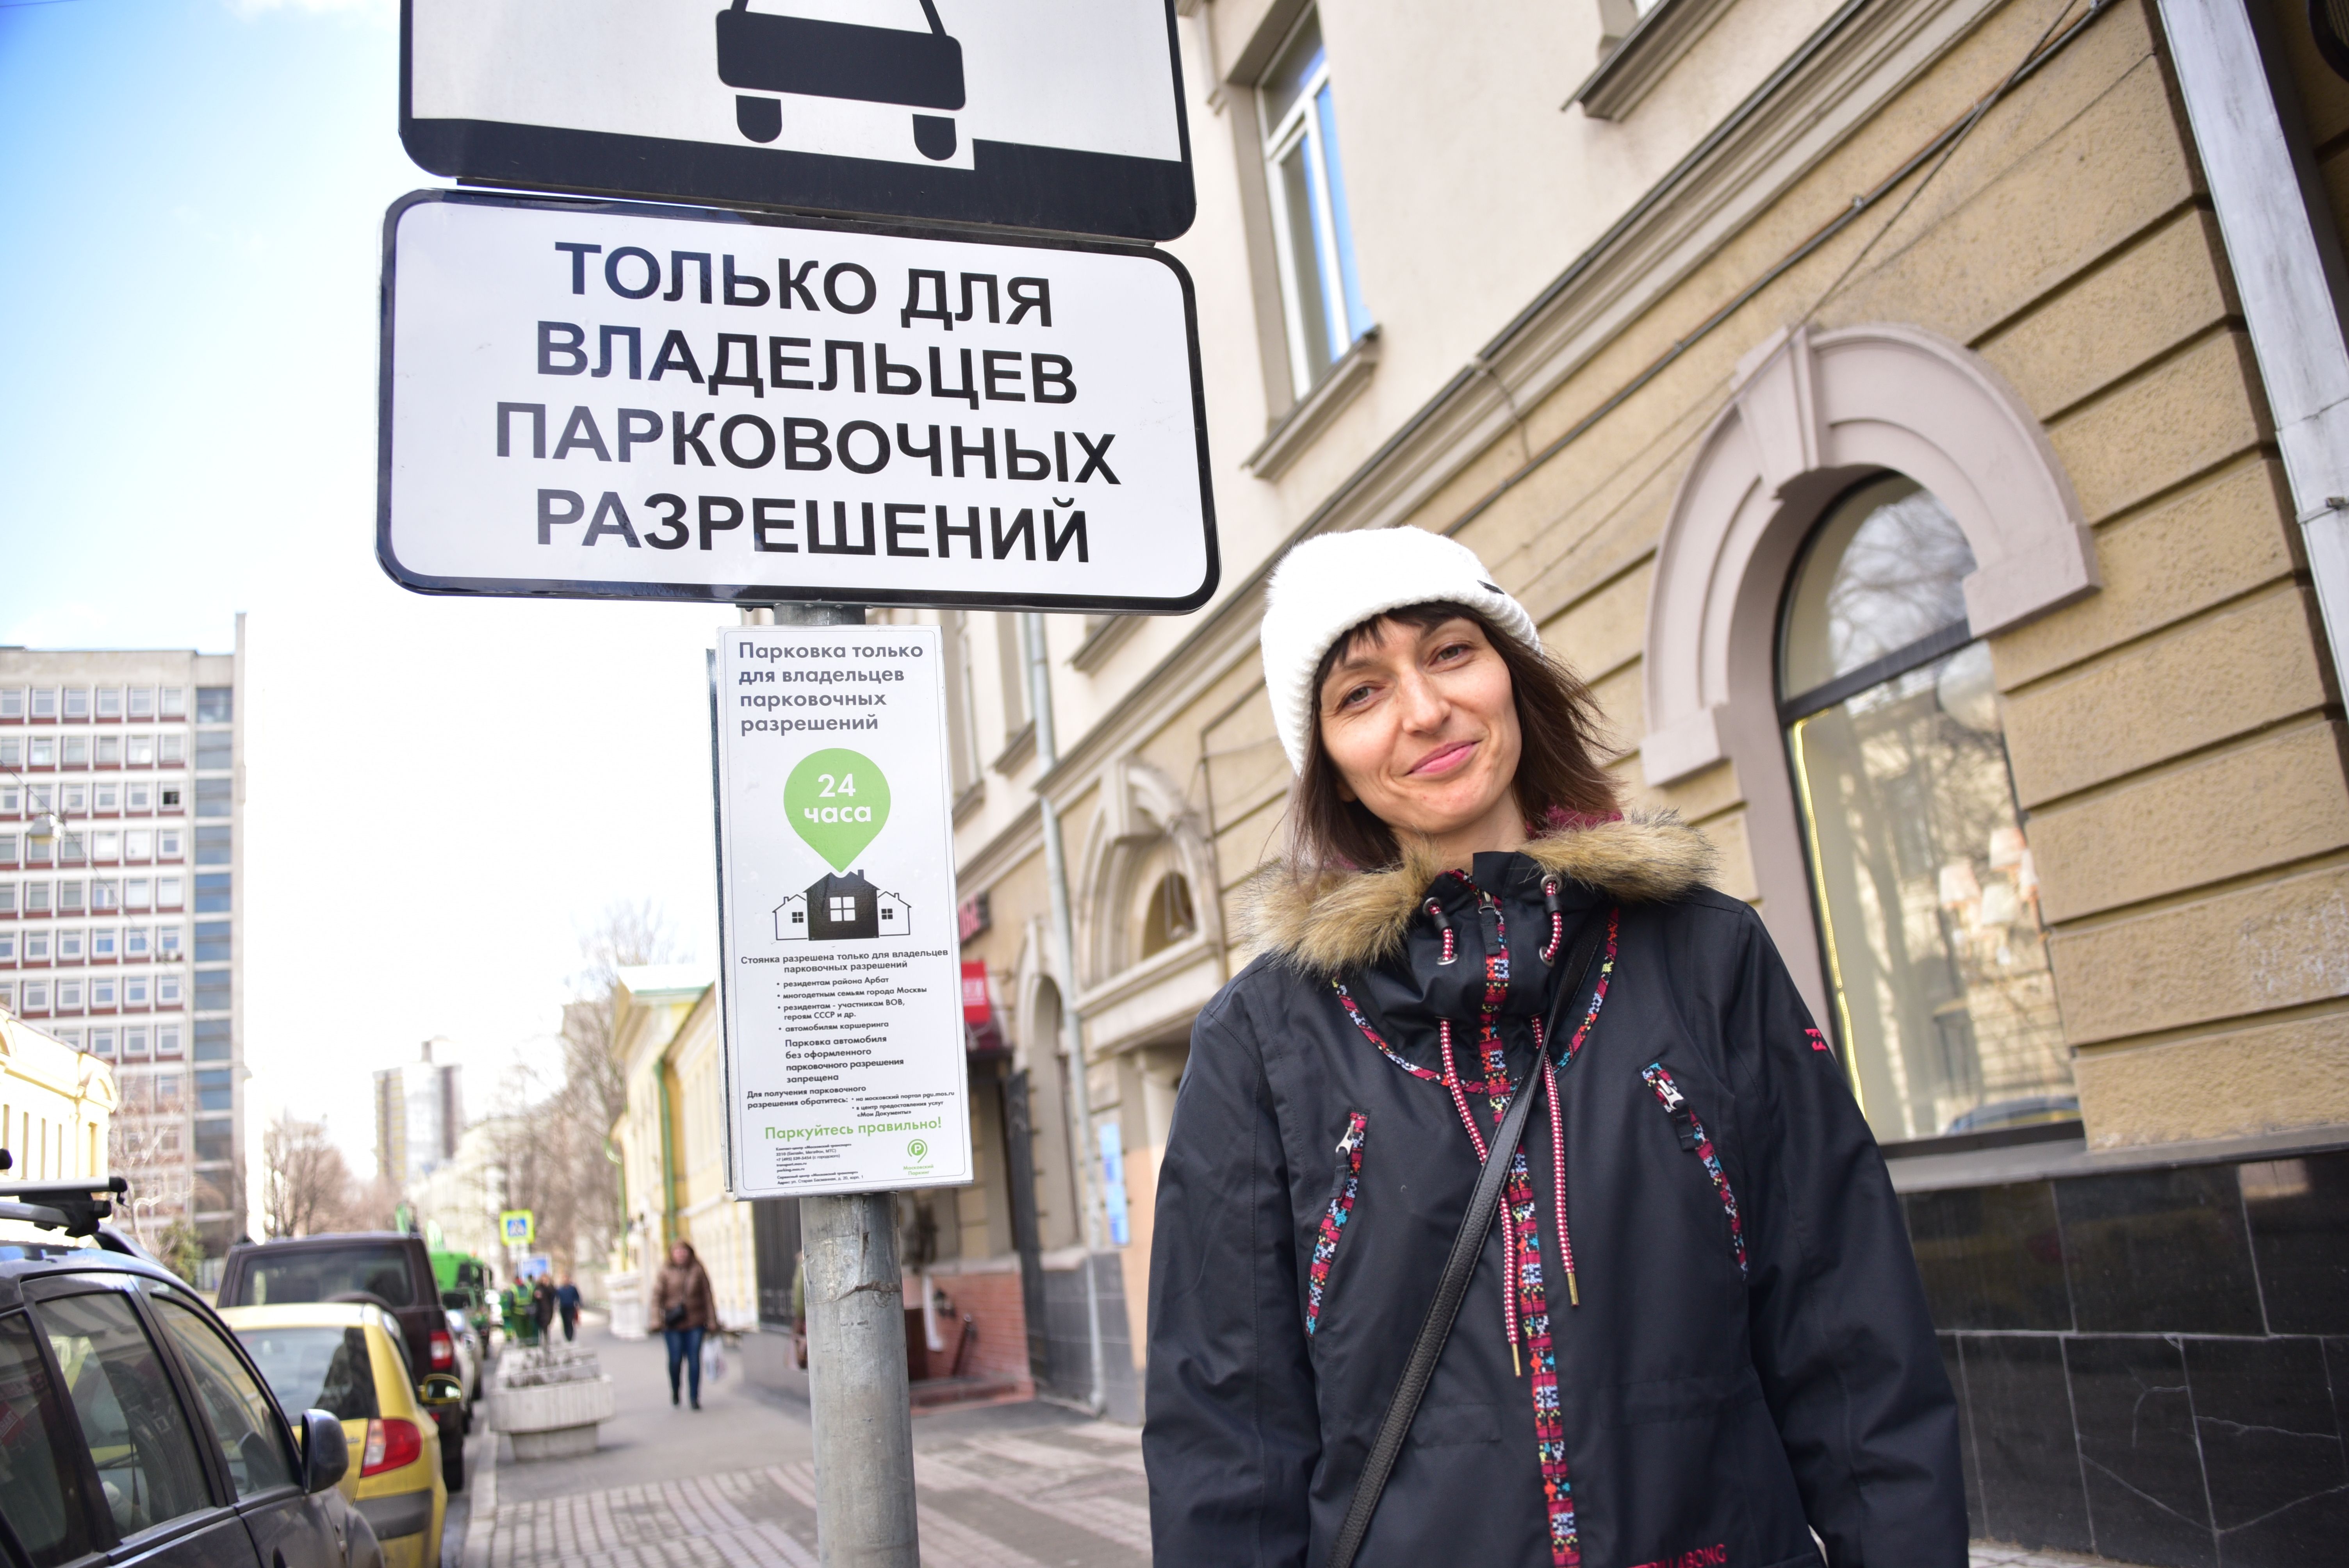 Москвичам продолжили рассылать СМС о продлении парковочных разрешений